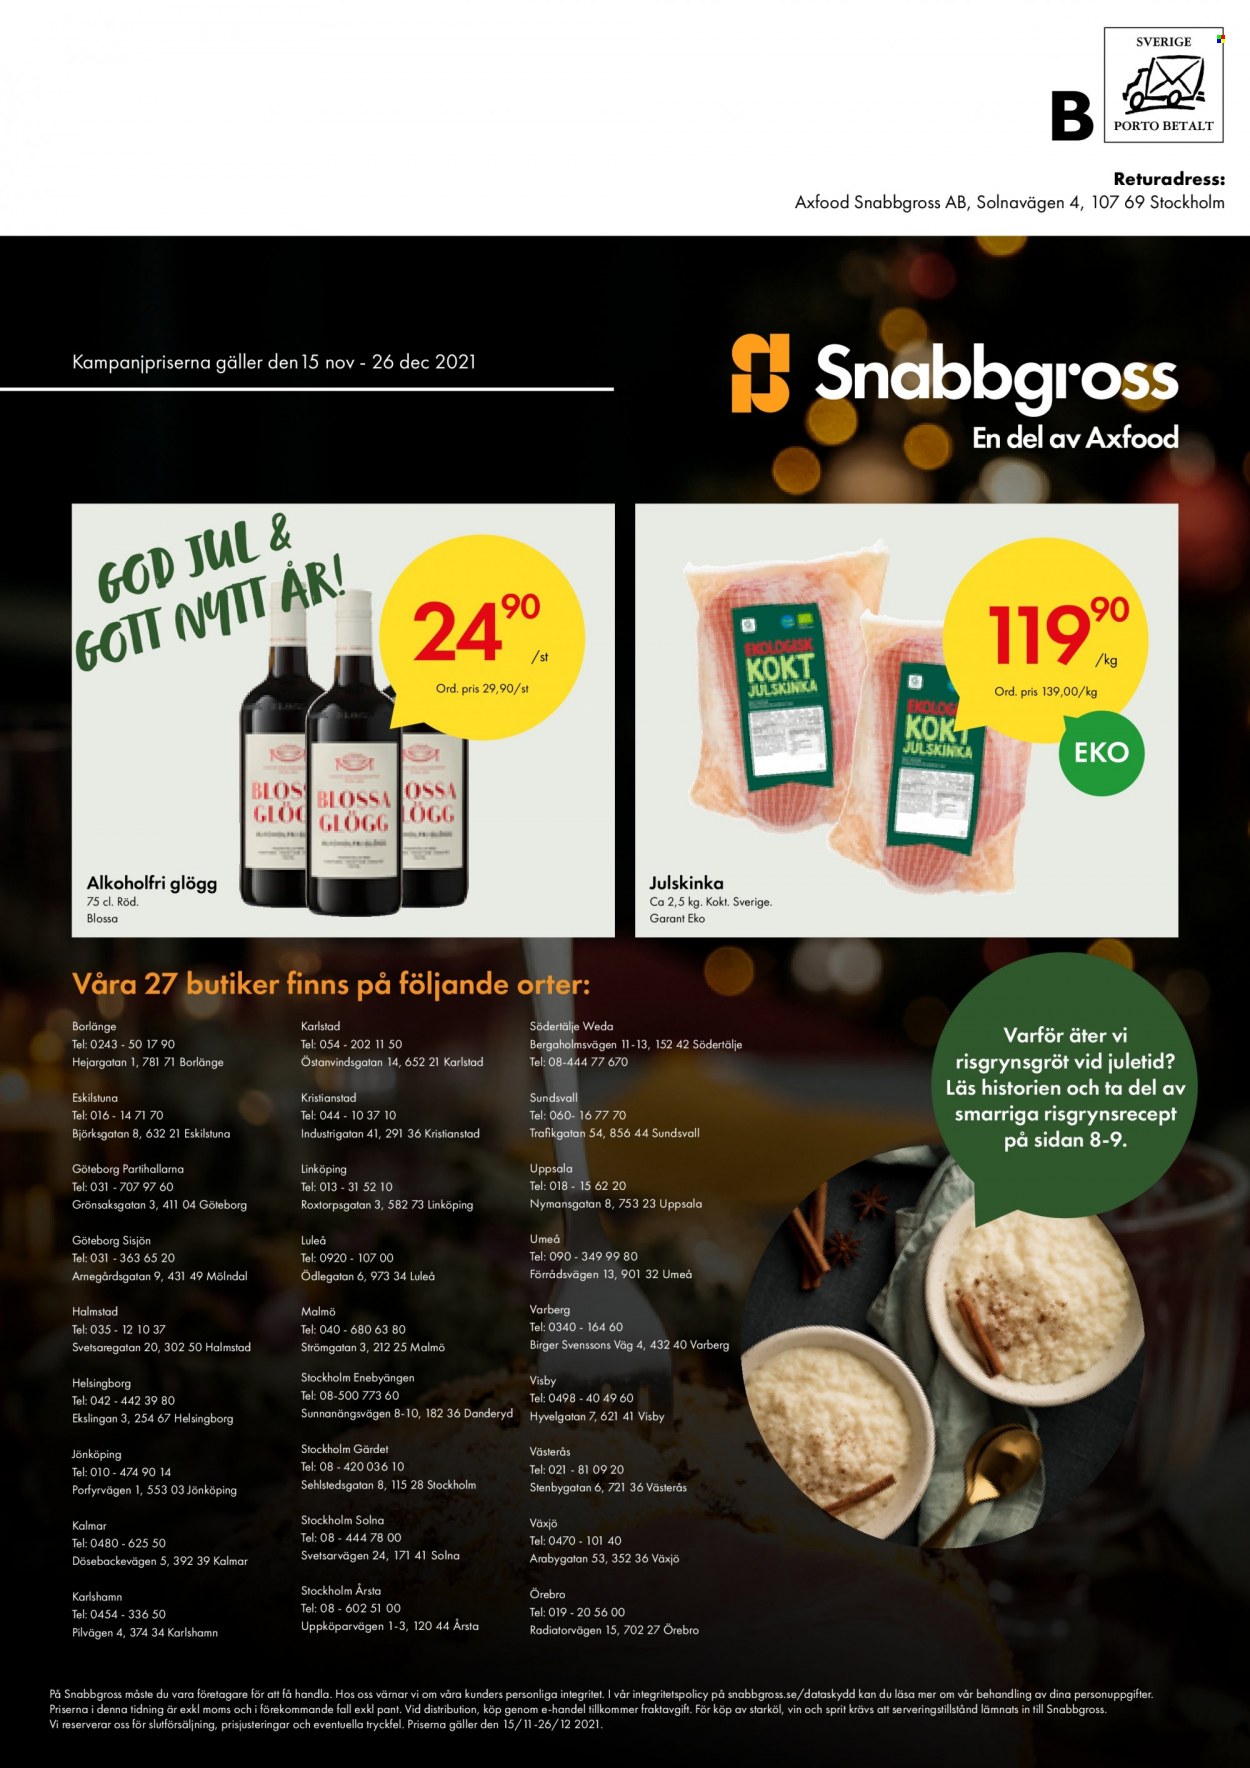 thumbnail - Axfood Snabbgross reklamblad - 15/11 2021 - 26/12 2021 - varor från reklamblad - starköl, julskinka, risgrynsgröt, glögg, alkoholfri glögg, vin. Sida 28.